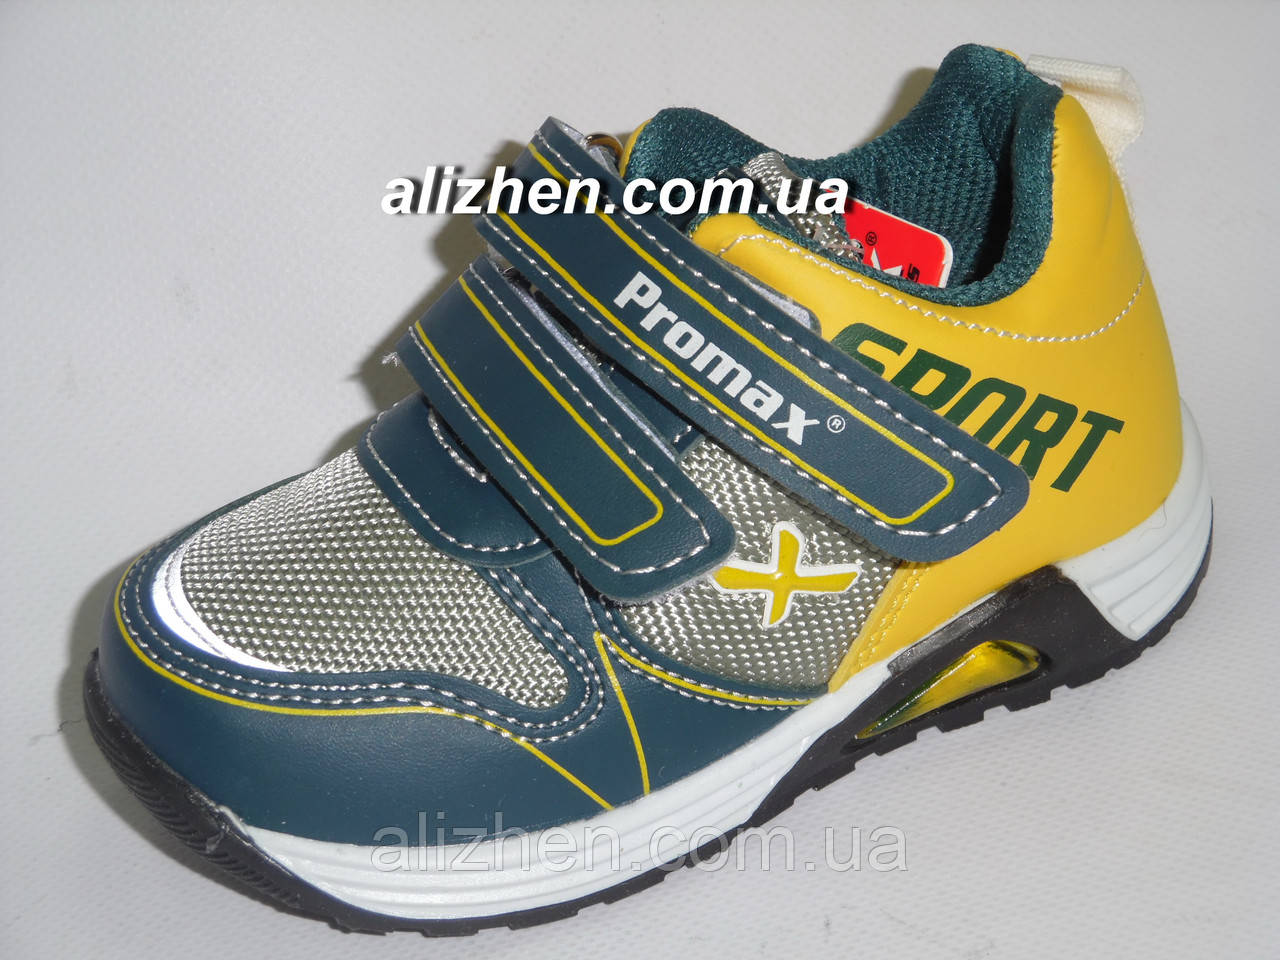 Дитячі спортивні демісезонні черевики для хлопчика тм Promax (промакс) Туреччина, розмір 22.